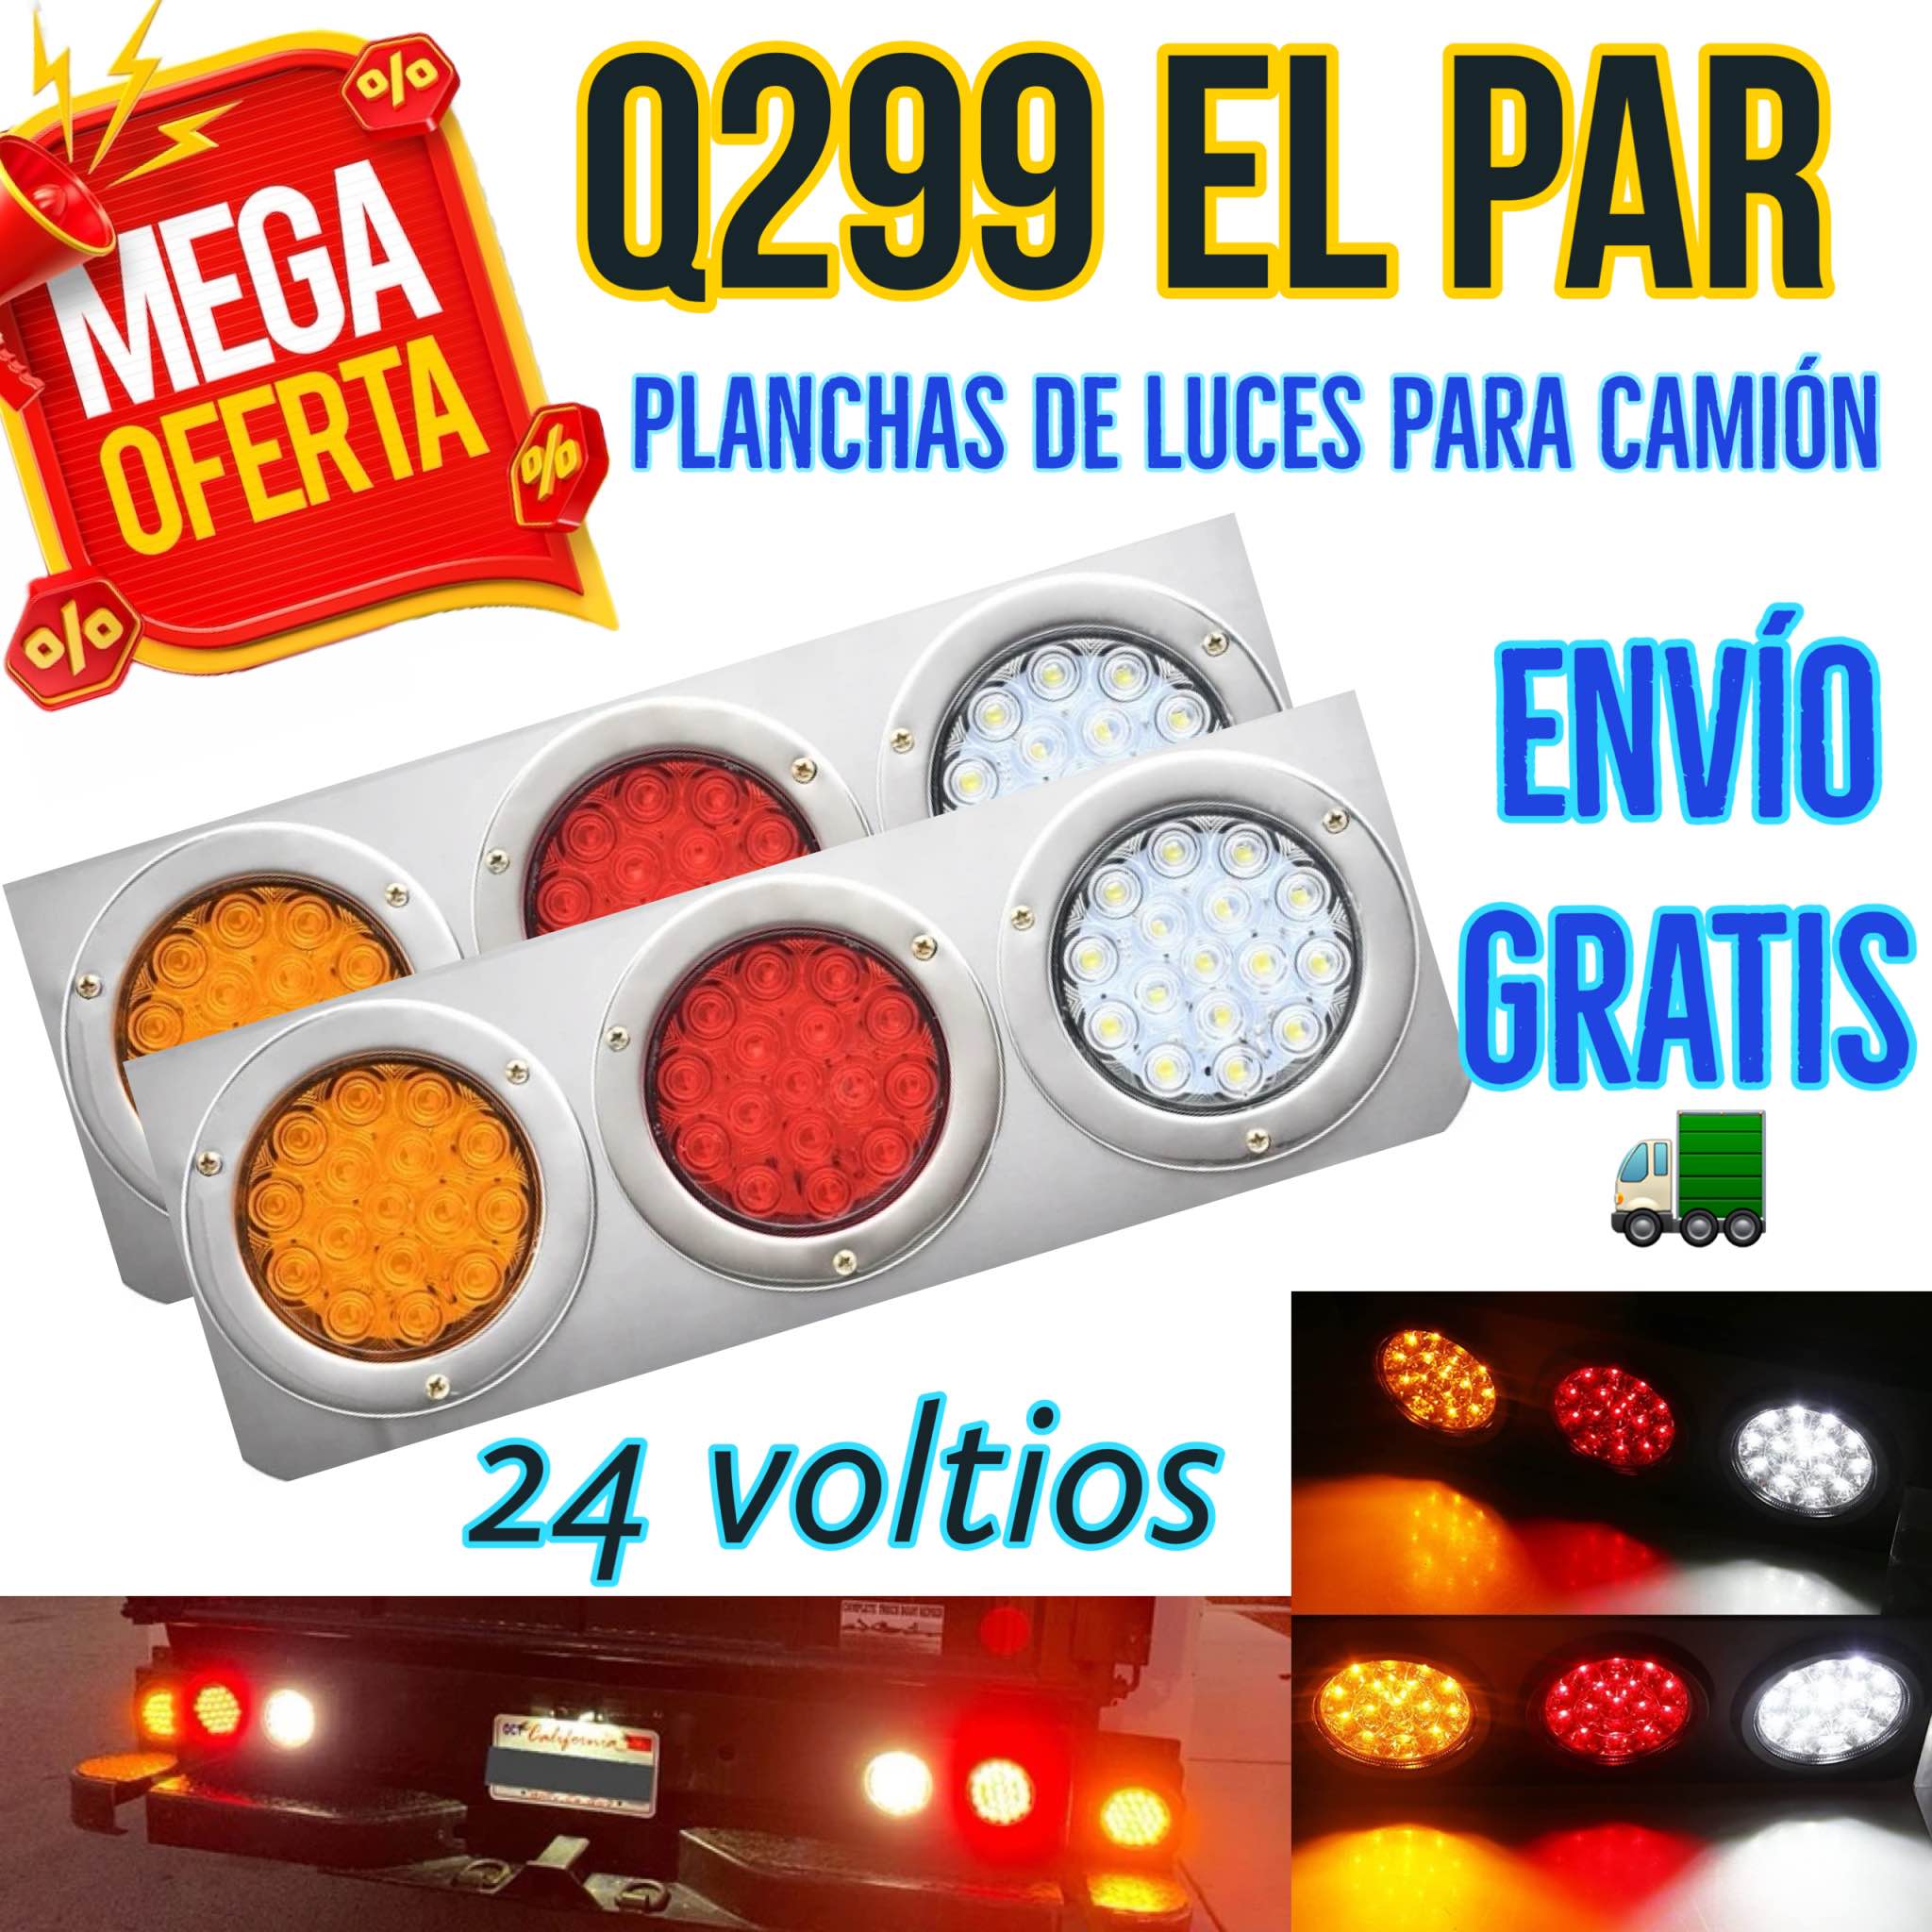 MEGA OFERTA DE FIN DE AÑO Plancha de Luces Led cromada para camión par Q299 con